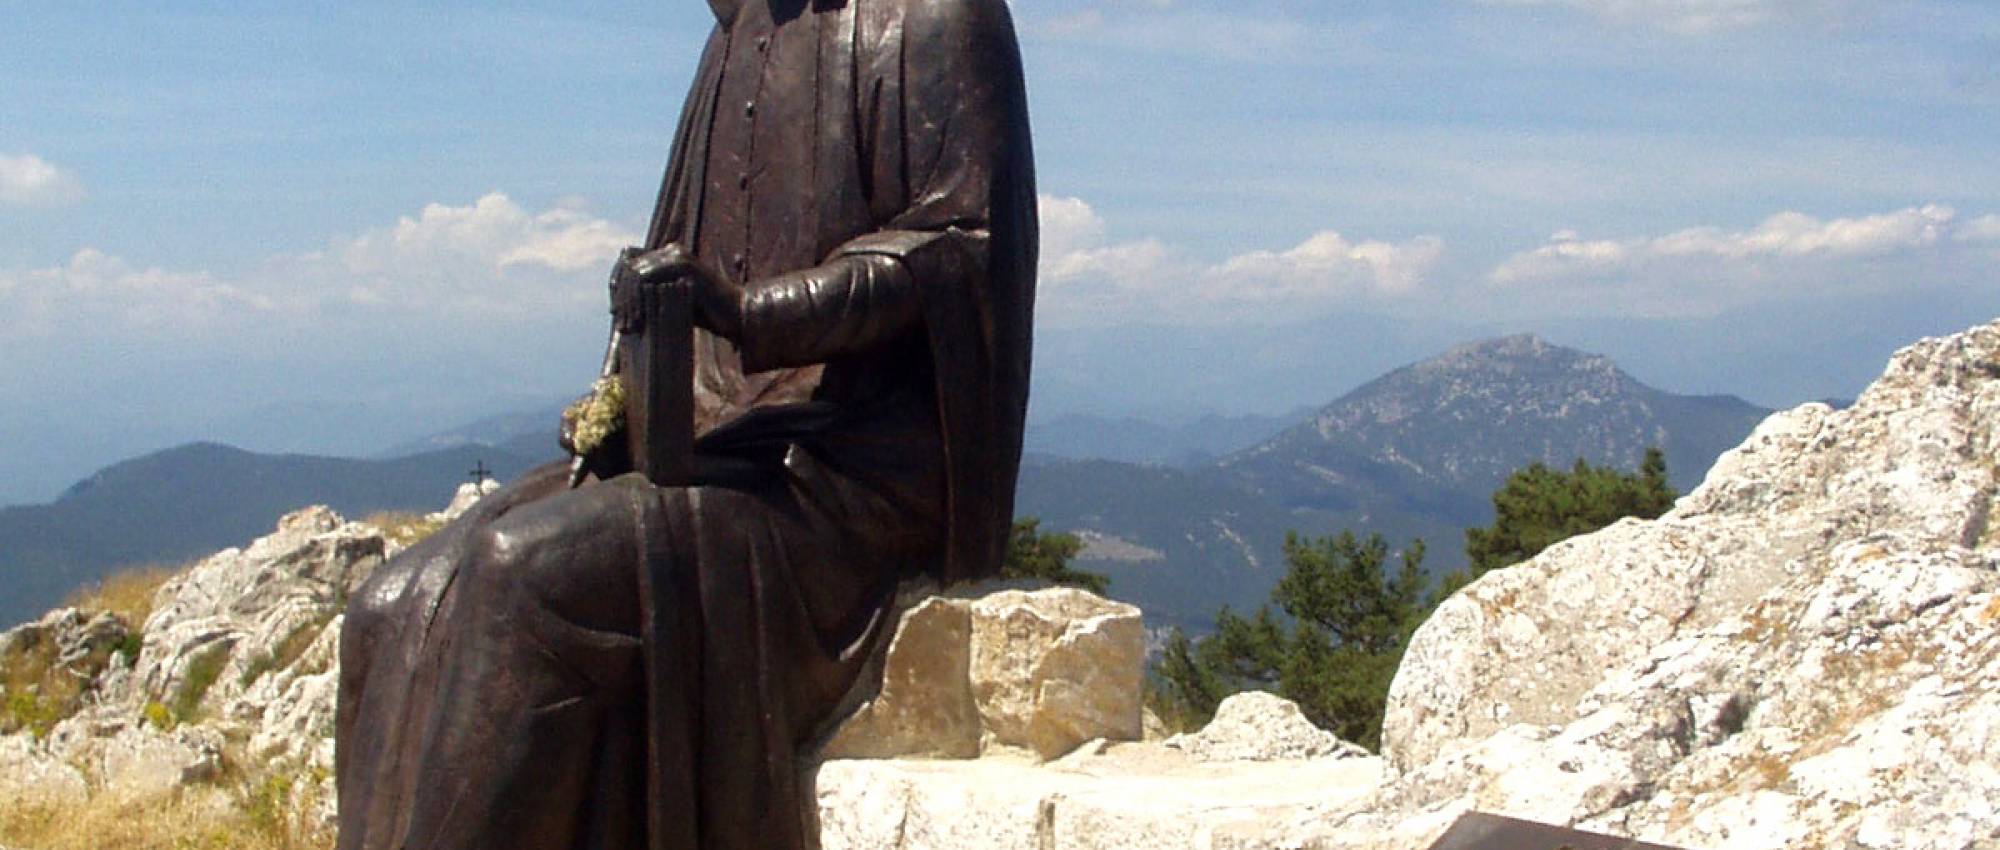 Monument dedicat a Jacint Verdaguer a la Mare de Déu del Mont. CC BY-SA 3.0 - DavidianSkitzou / Wikimedia Commons